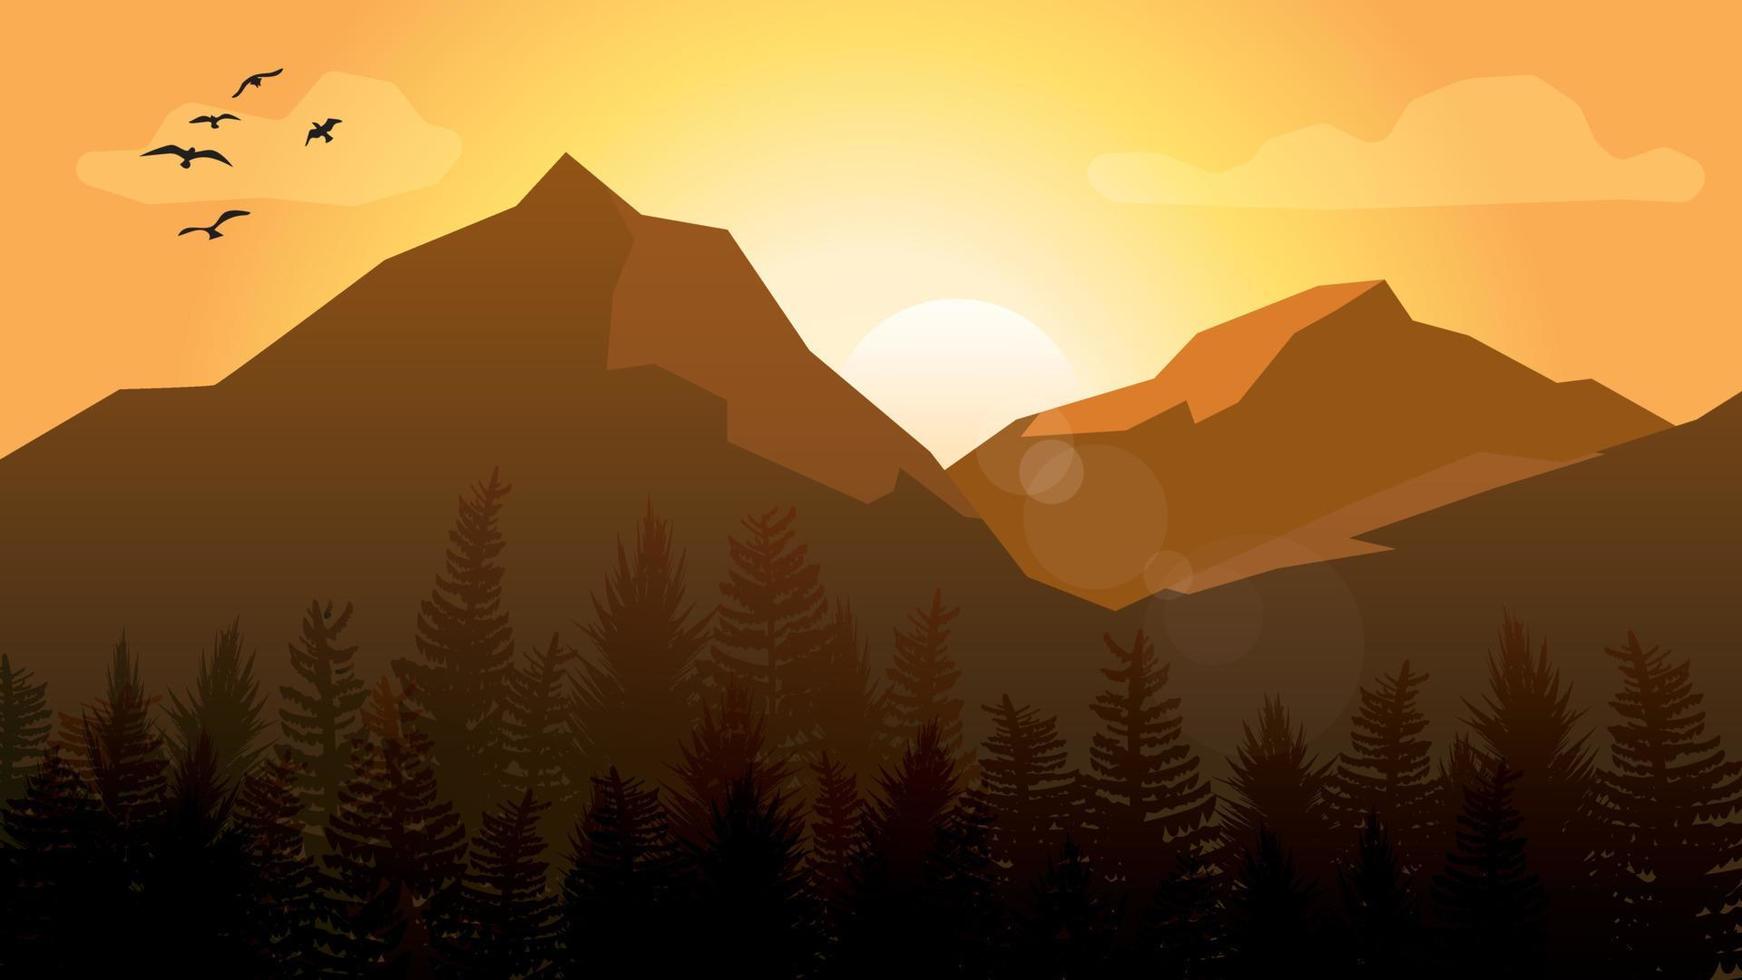 paisaje montañoso con siluetas de árboles y pájaros con cielo de amanecer o atardecer y destellos de lente. vector